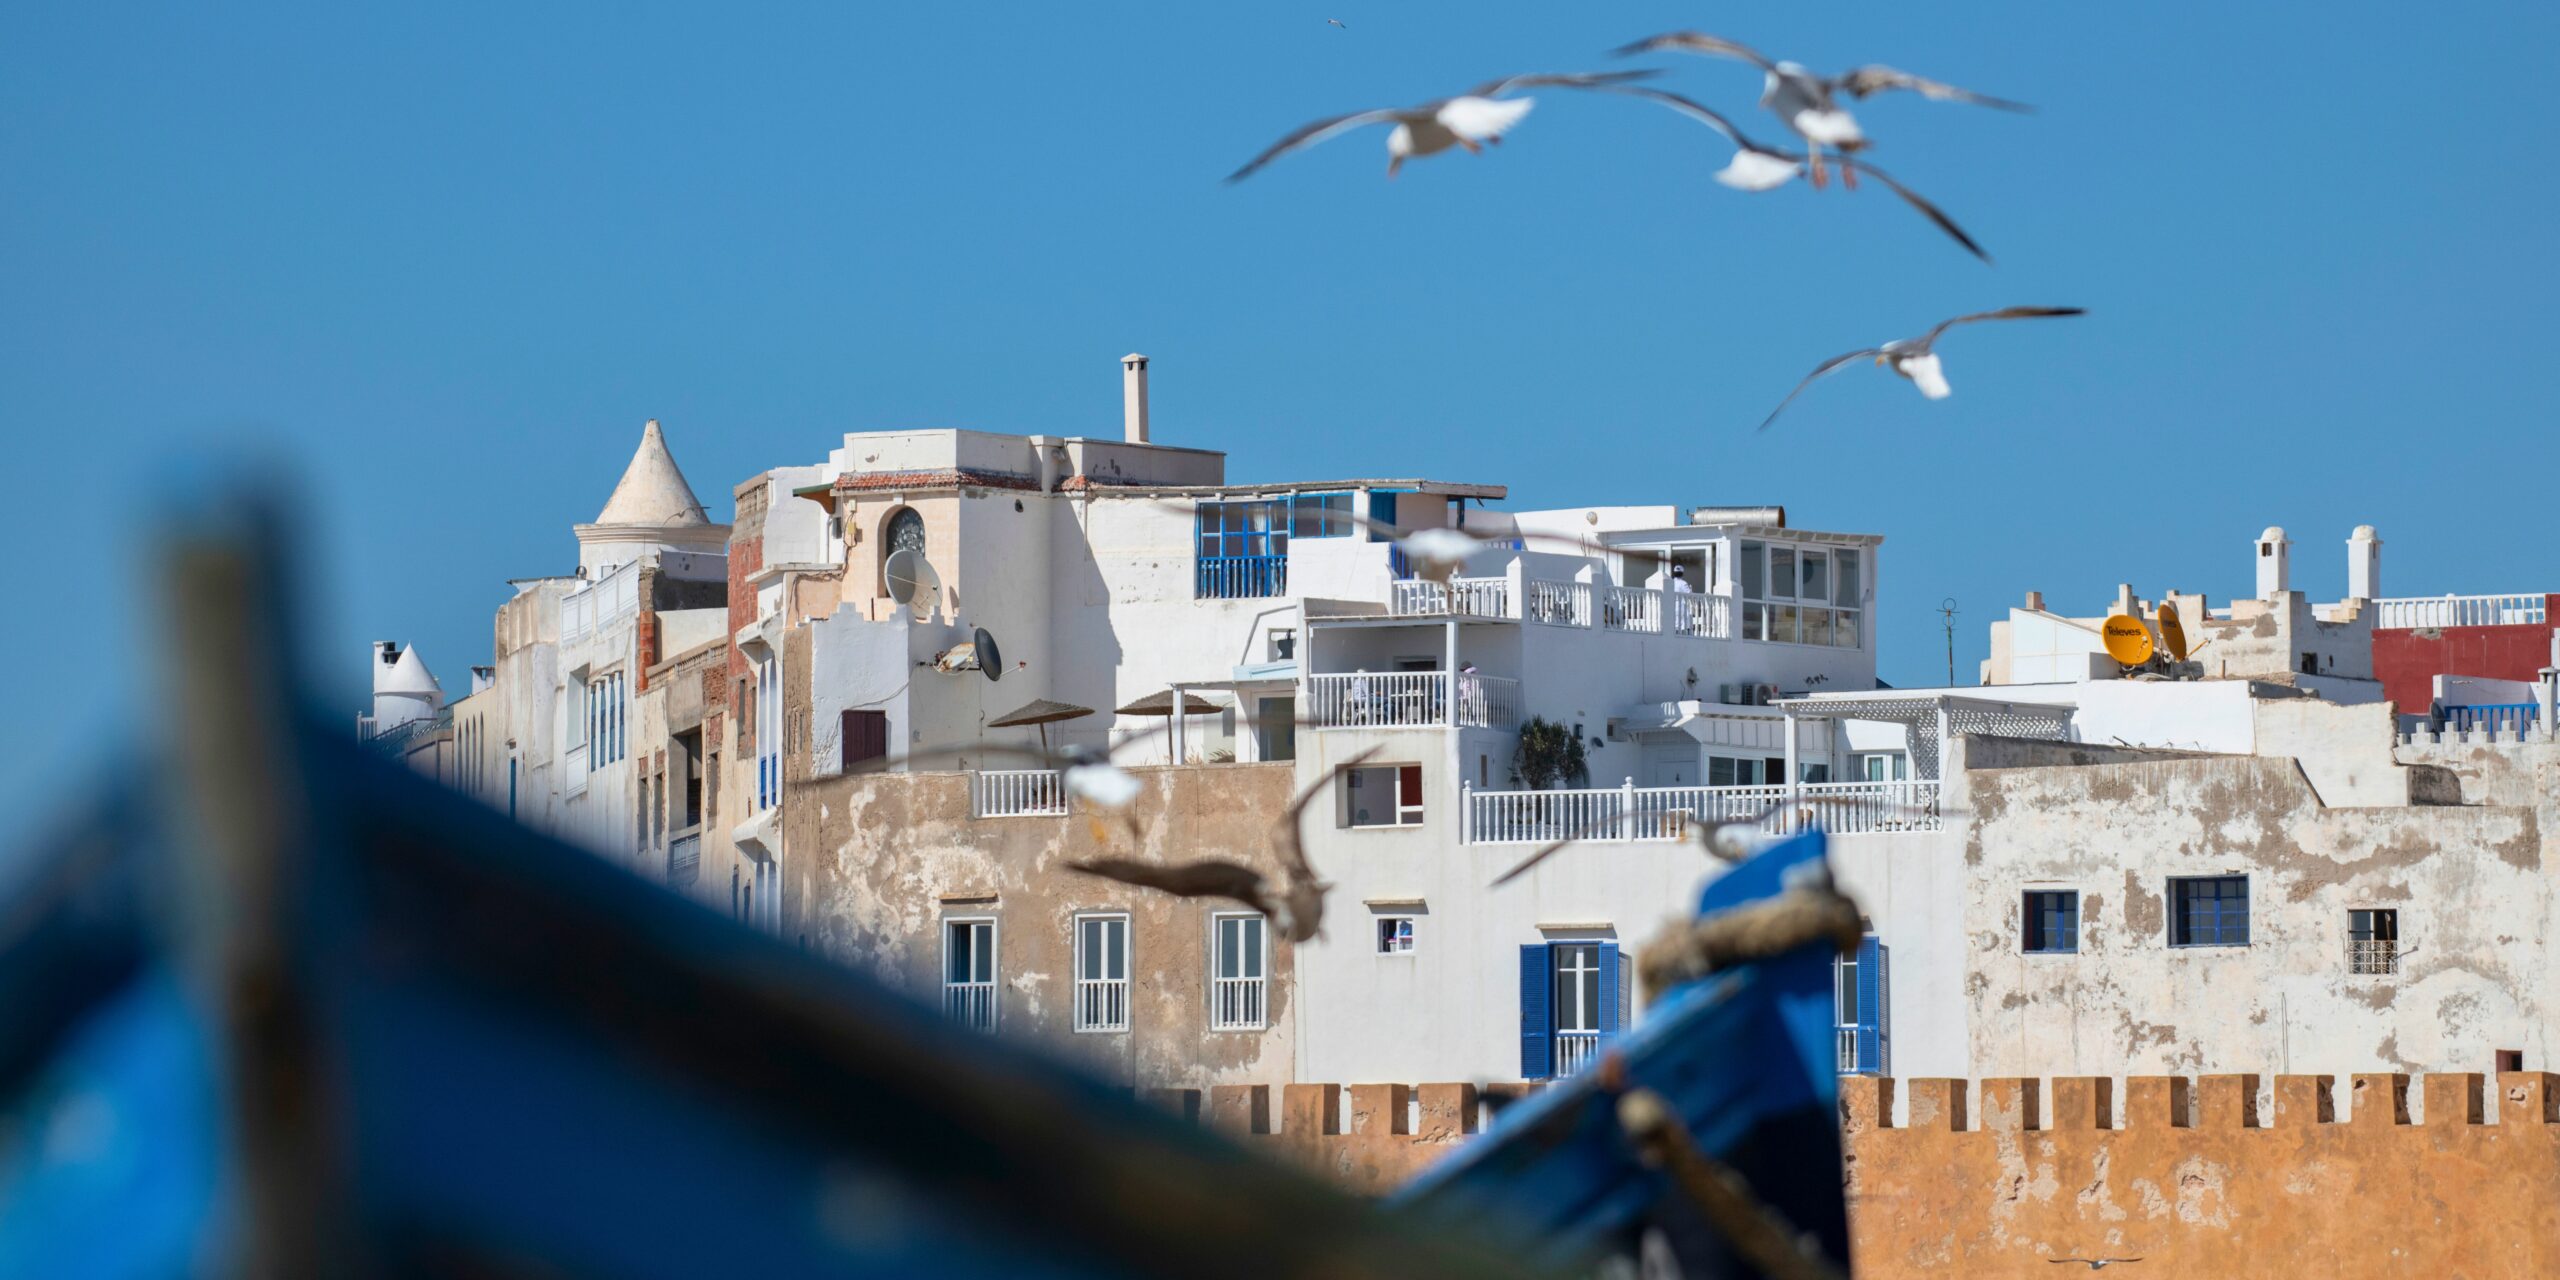 Les bateaux bleus, un symbole du port d'Essaouira